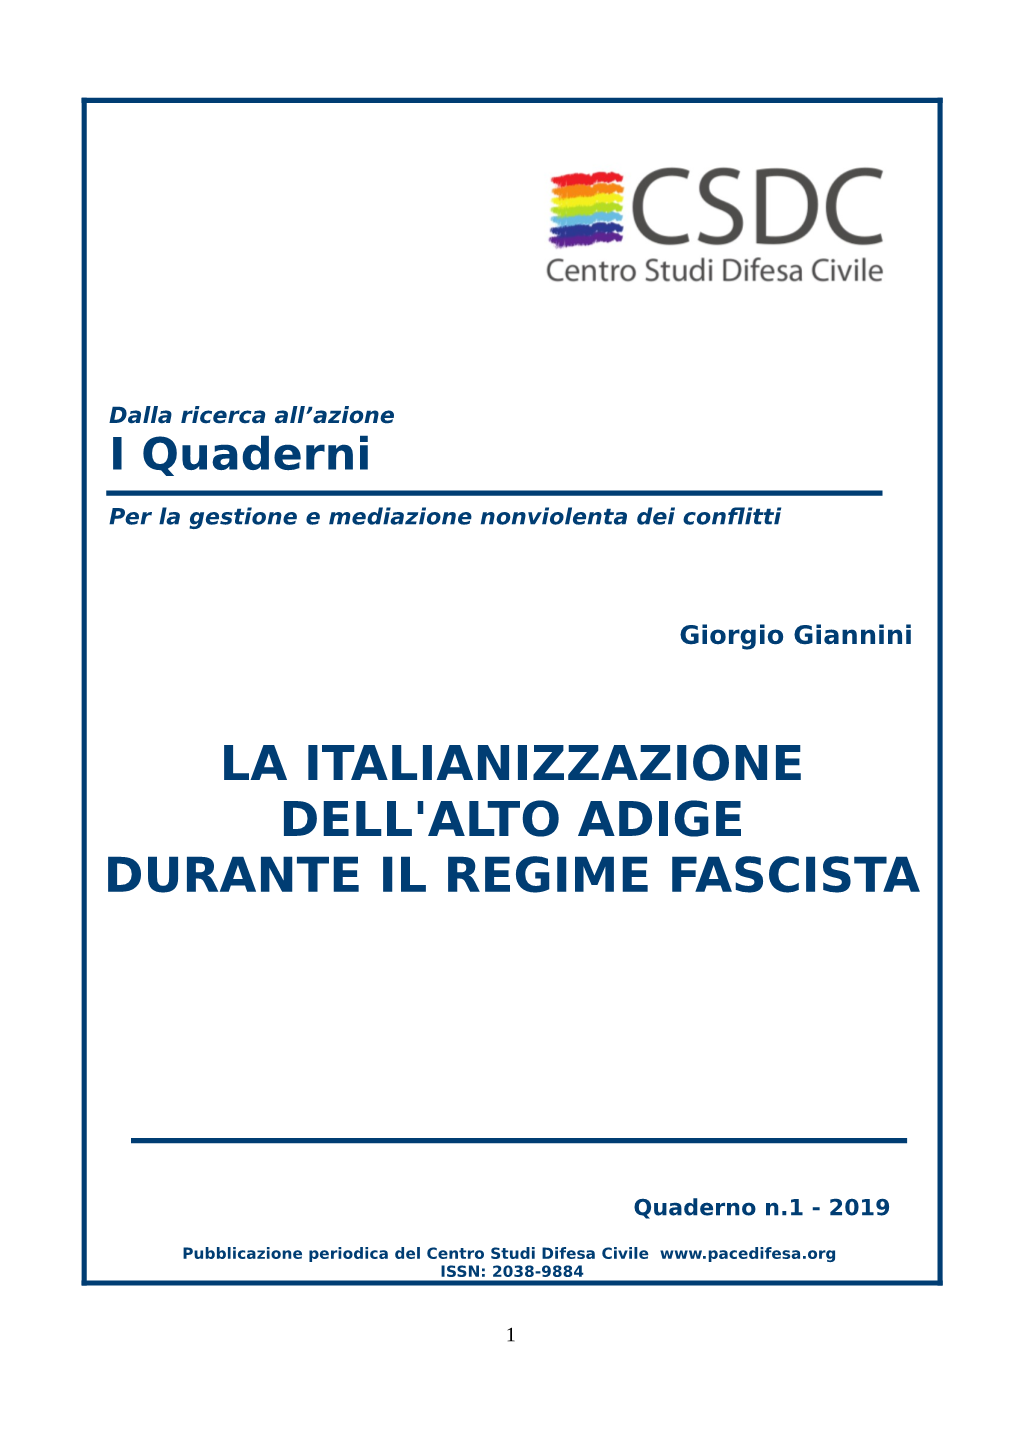 La Italianizzazione Dell'alto Adige Durante Il Regime Fascista